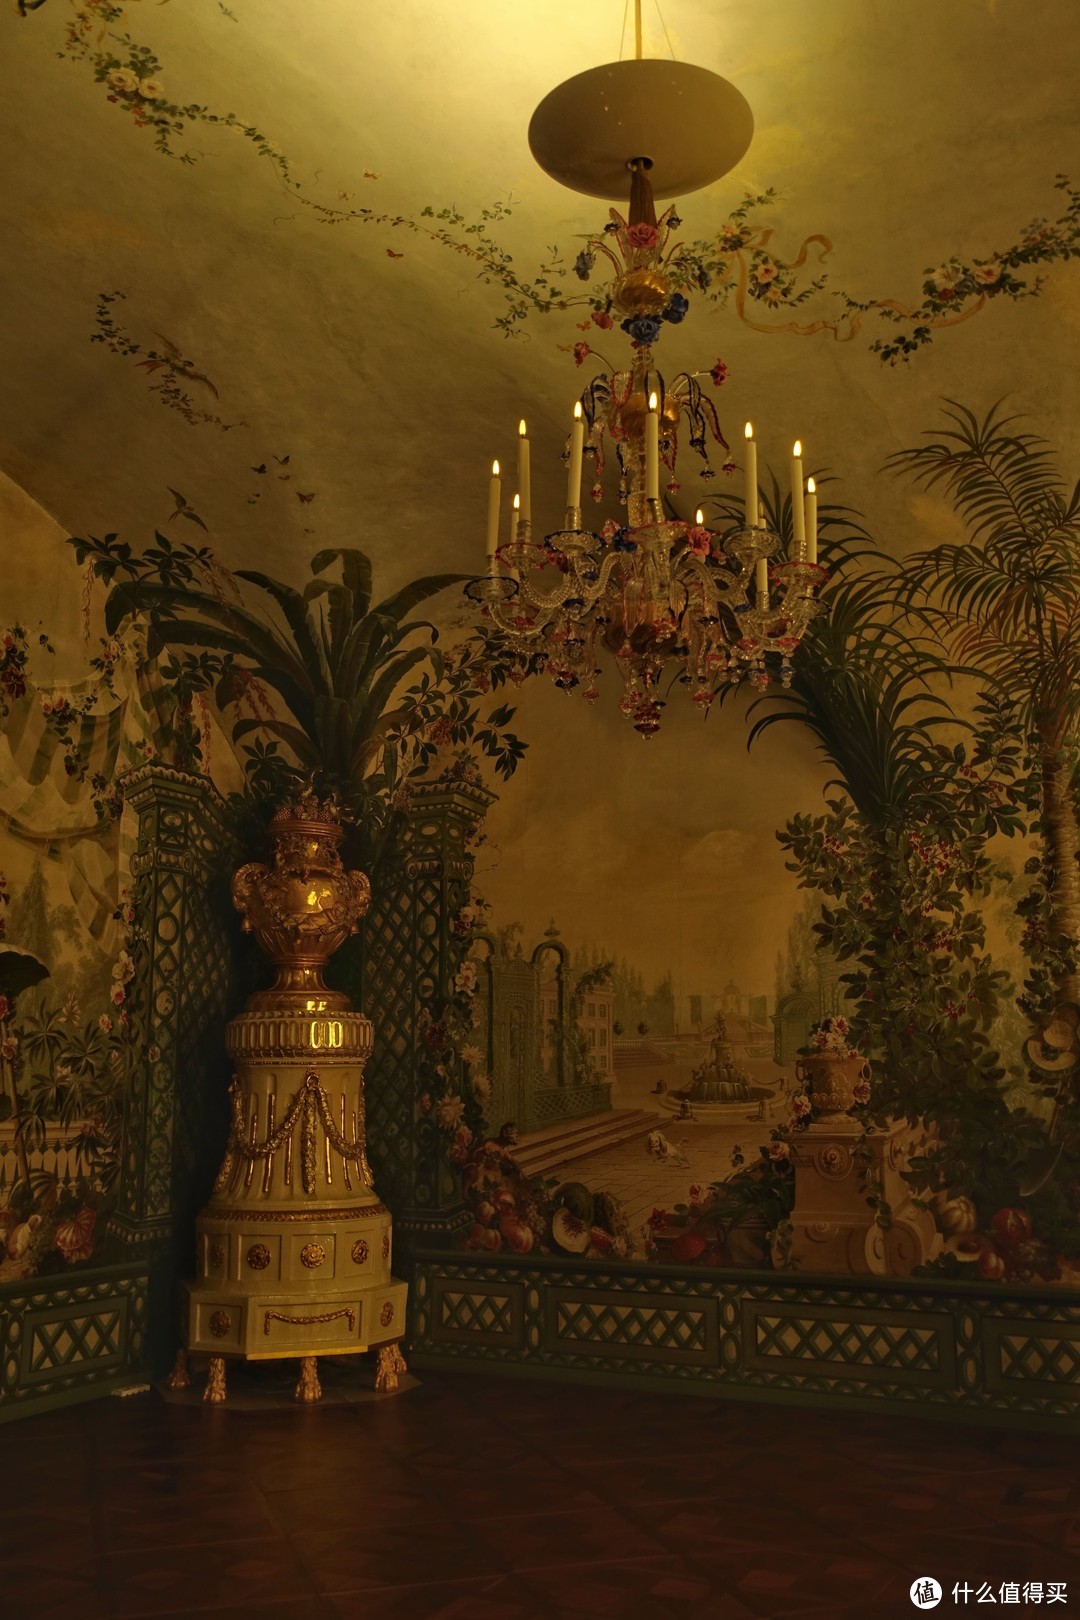 极小部分允许拍照的房间。之前参观的皇宫好像没见过这种满墙的绘画，而且是如此色彩丰富的自然绘景。